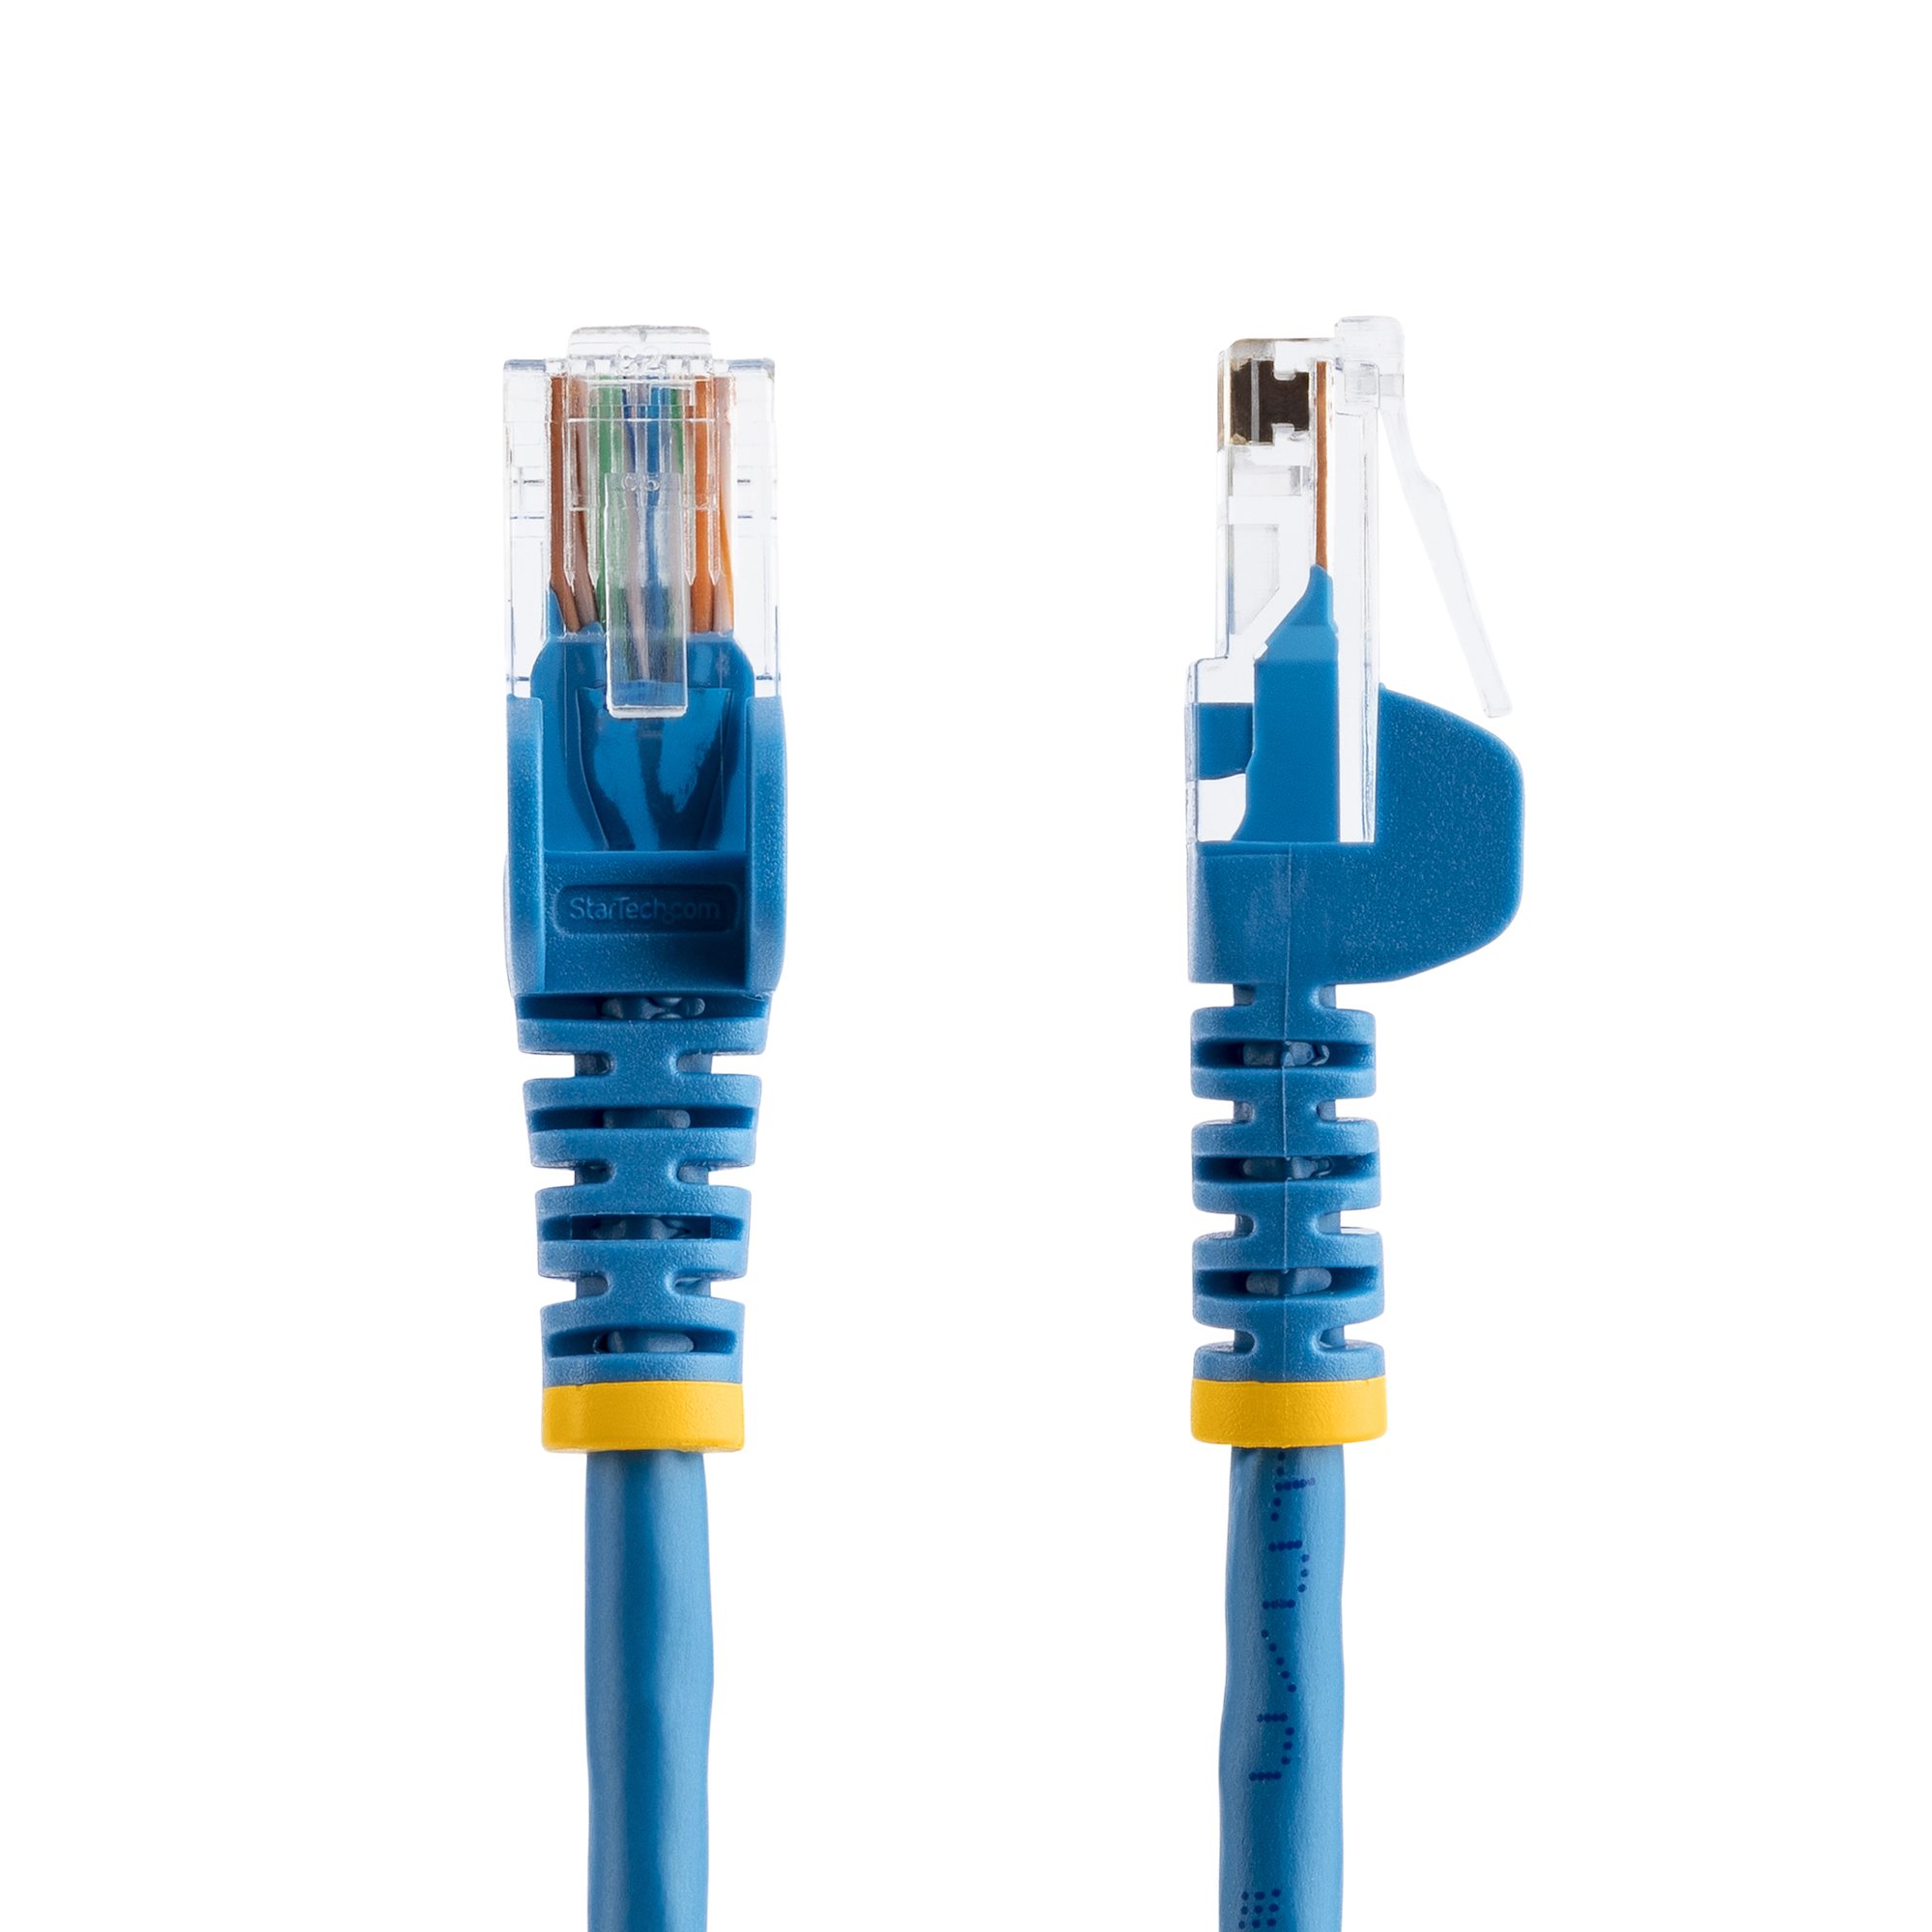 Cable de Red 1.8m Cat5e UTP RJ45 Azul (RJ45PATCH6)